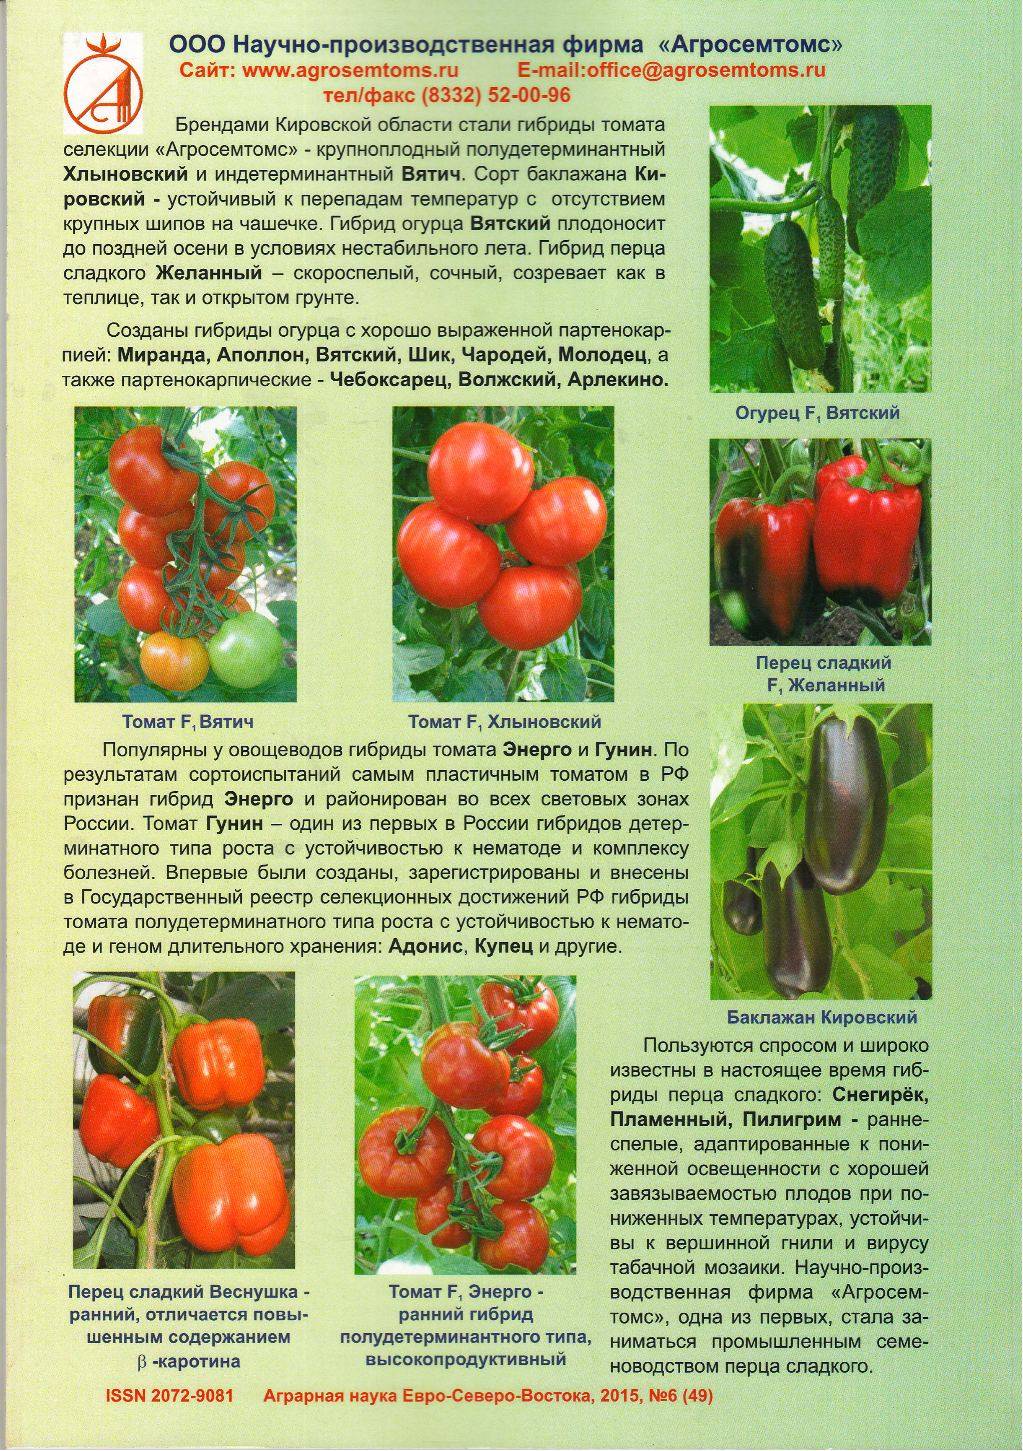 Томат раджа: характеристика и описание сорта, отзывы об урожайности помидоров, фото куст